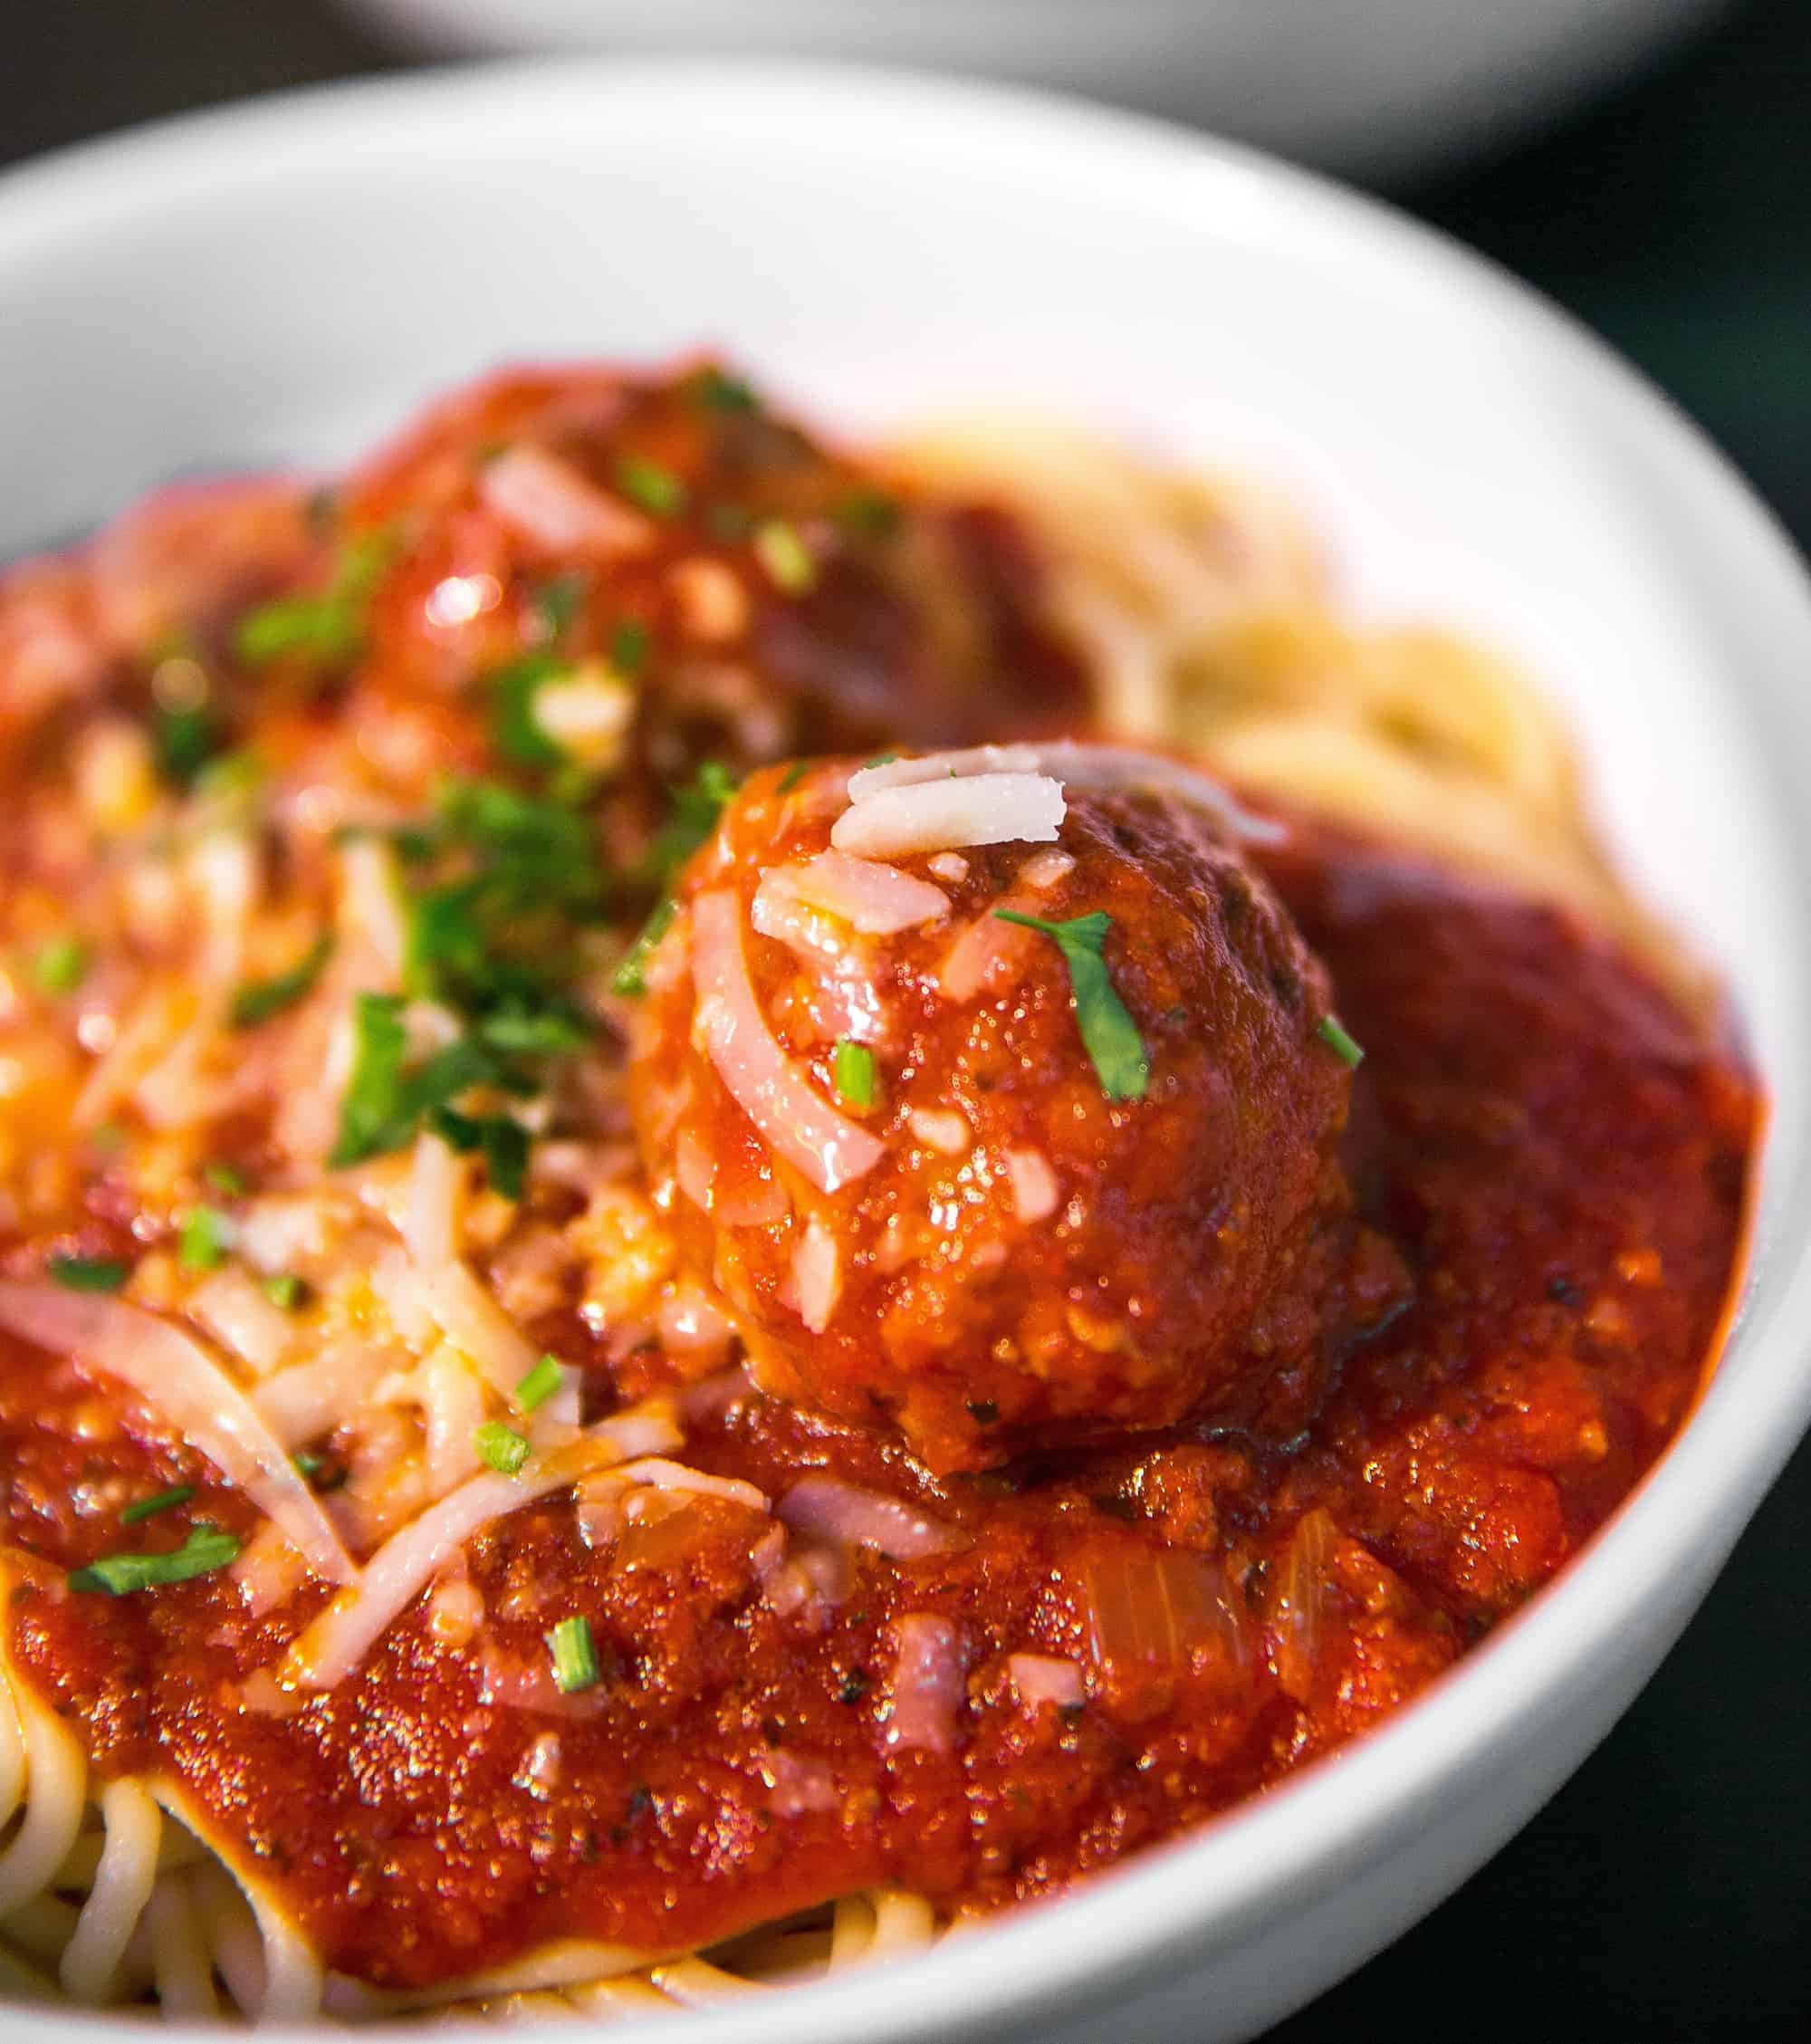 How To Make: Spaghetti & Meatballs